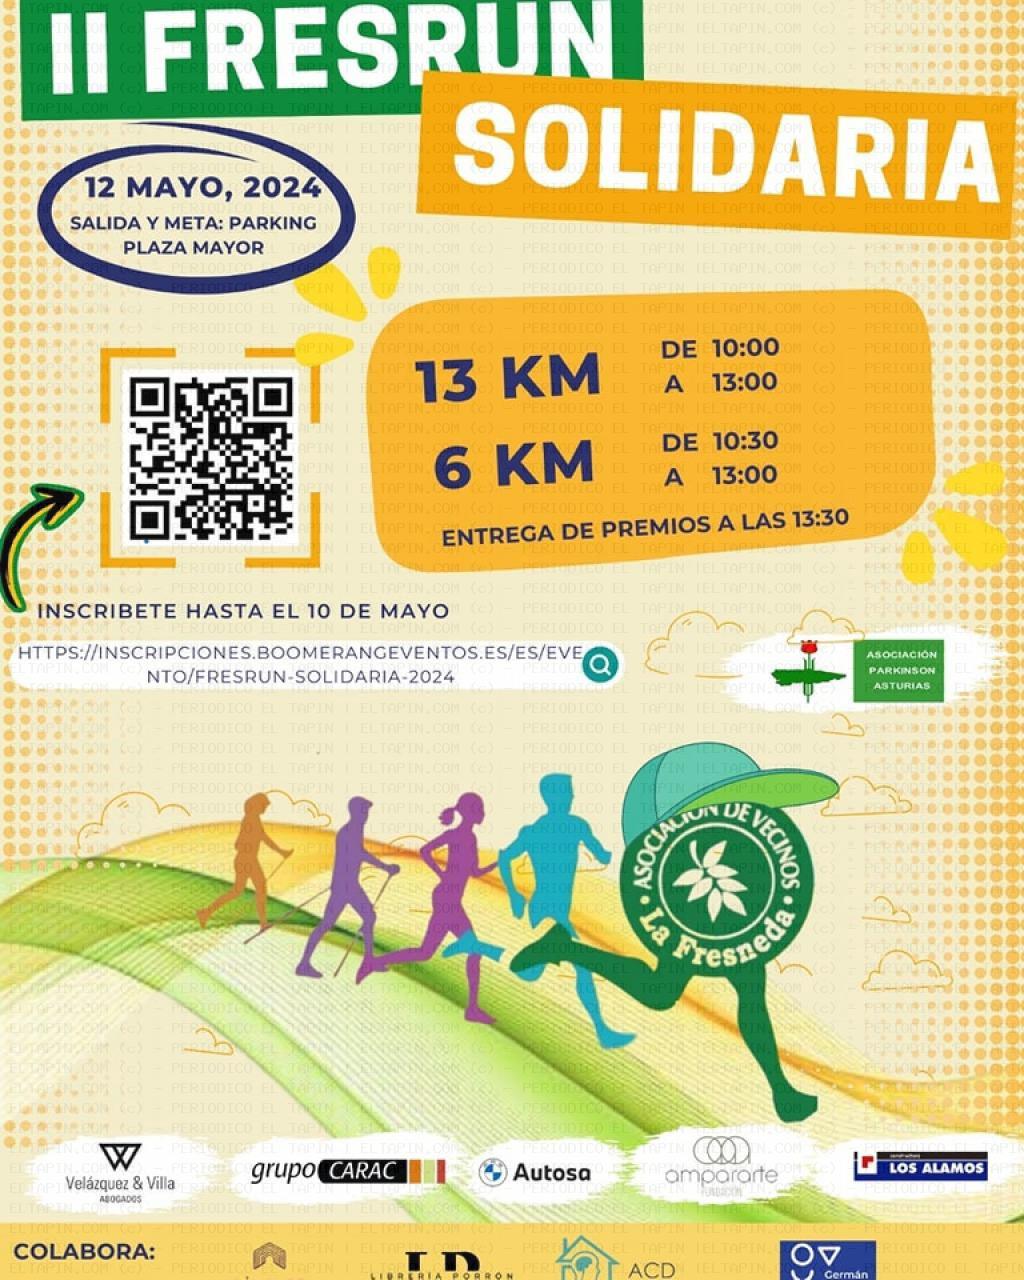 El Tapin - La Urbanización La Fresneda celebra la II Carrera Solidaria FRESRUN el 12 de mayo